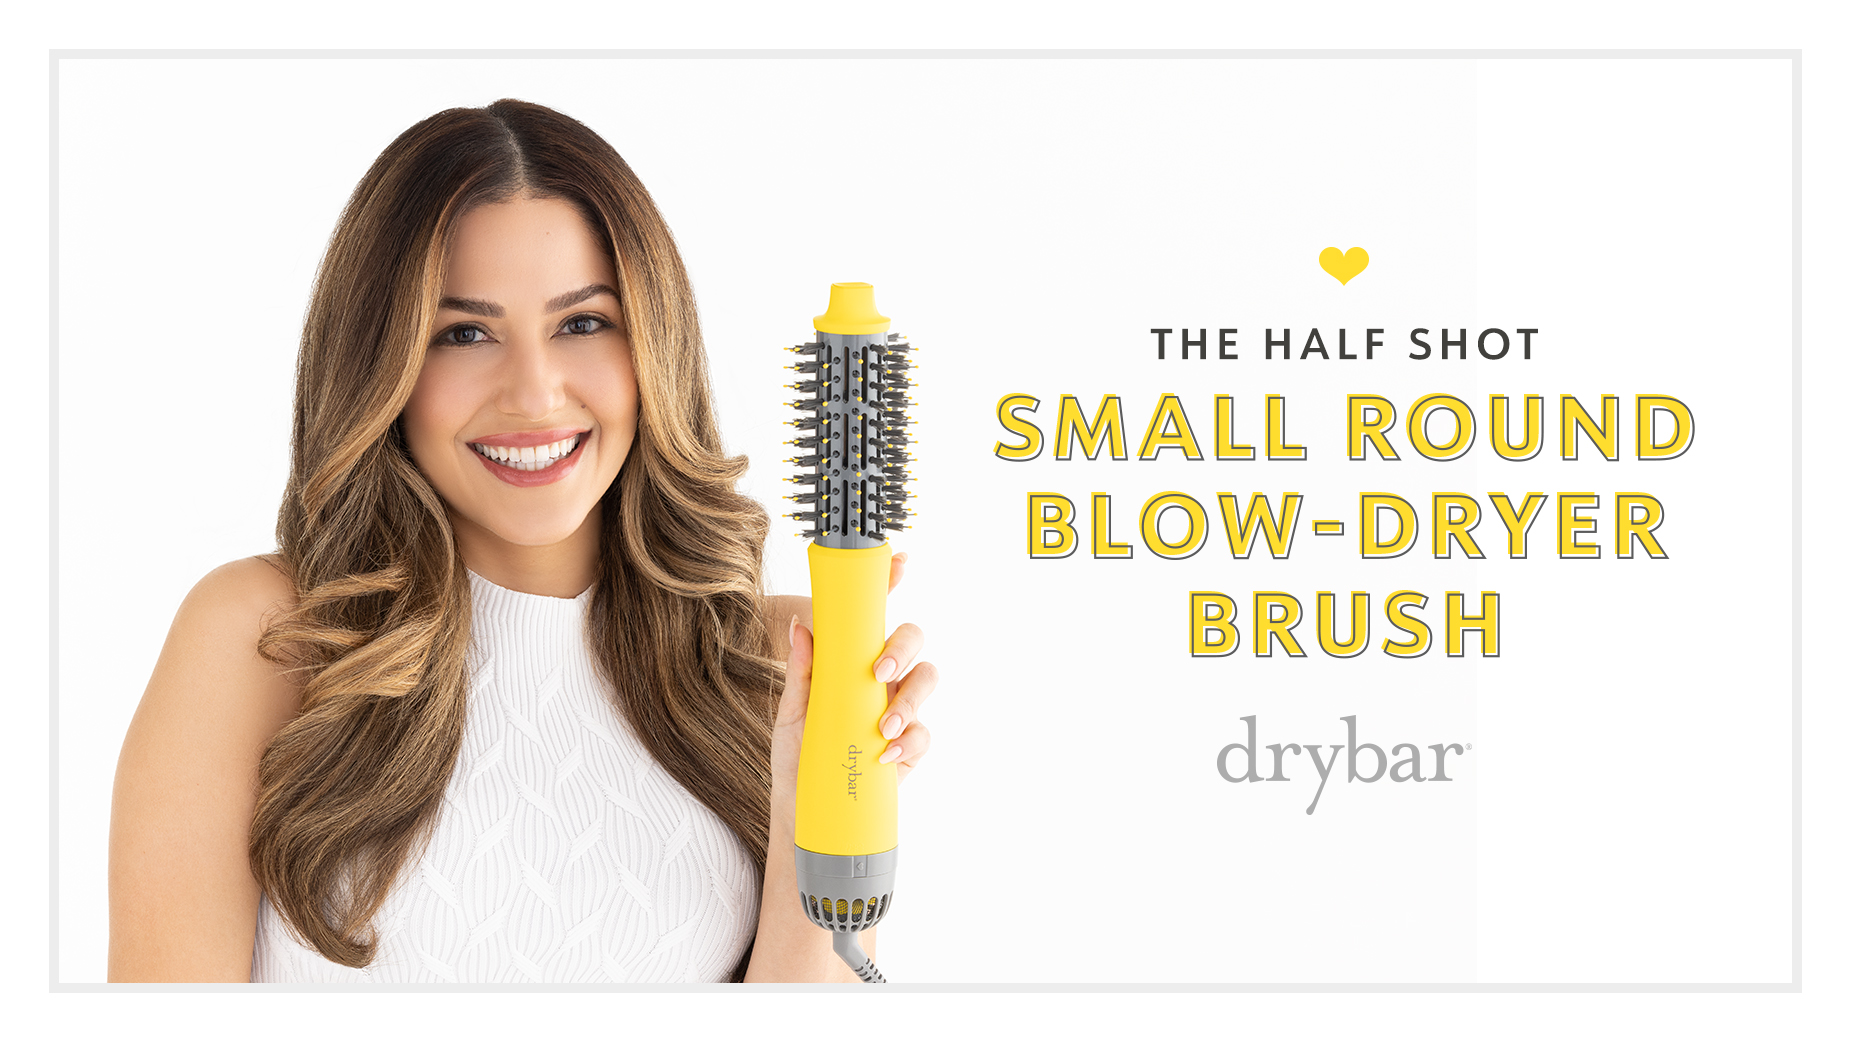 The Half Shot Small Round Blow-Dryer Brush